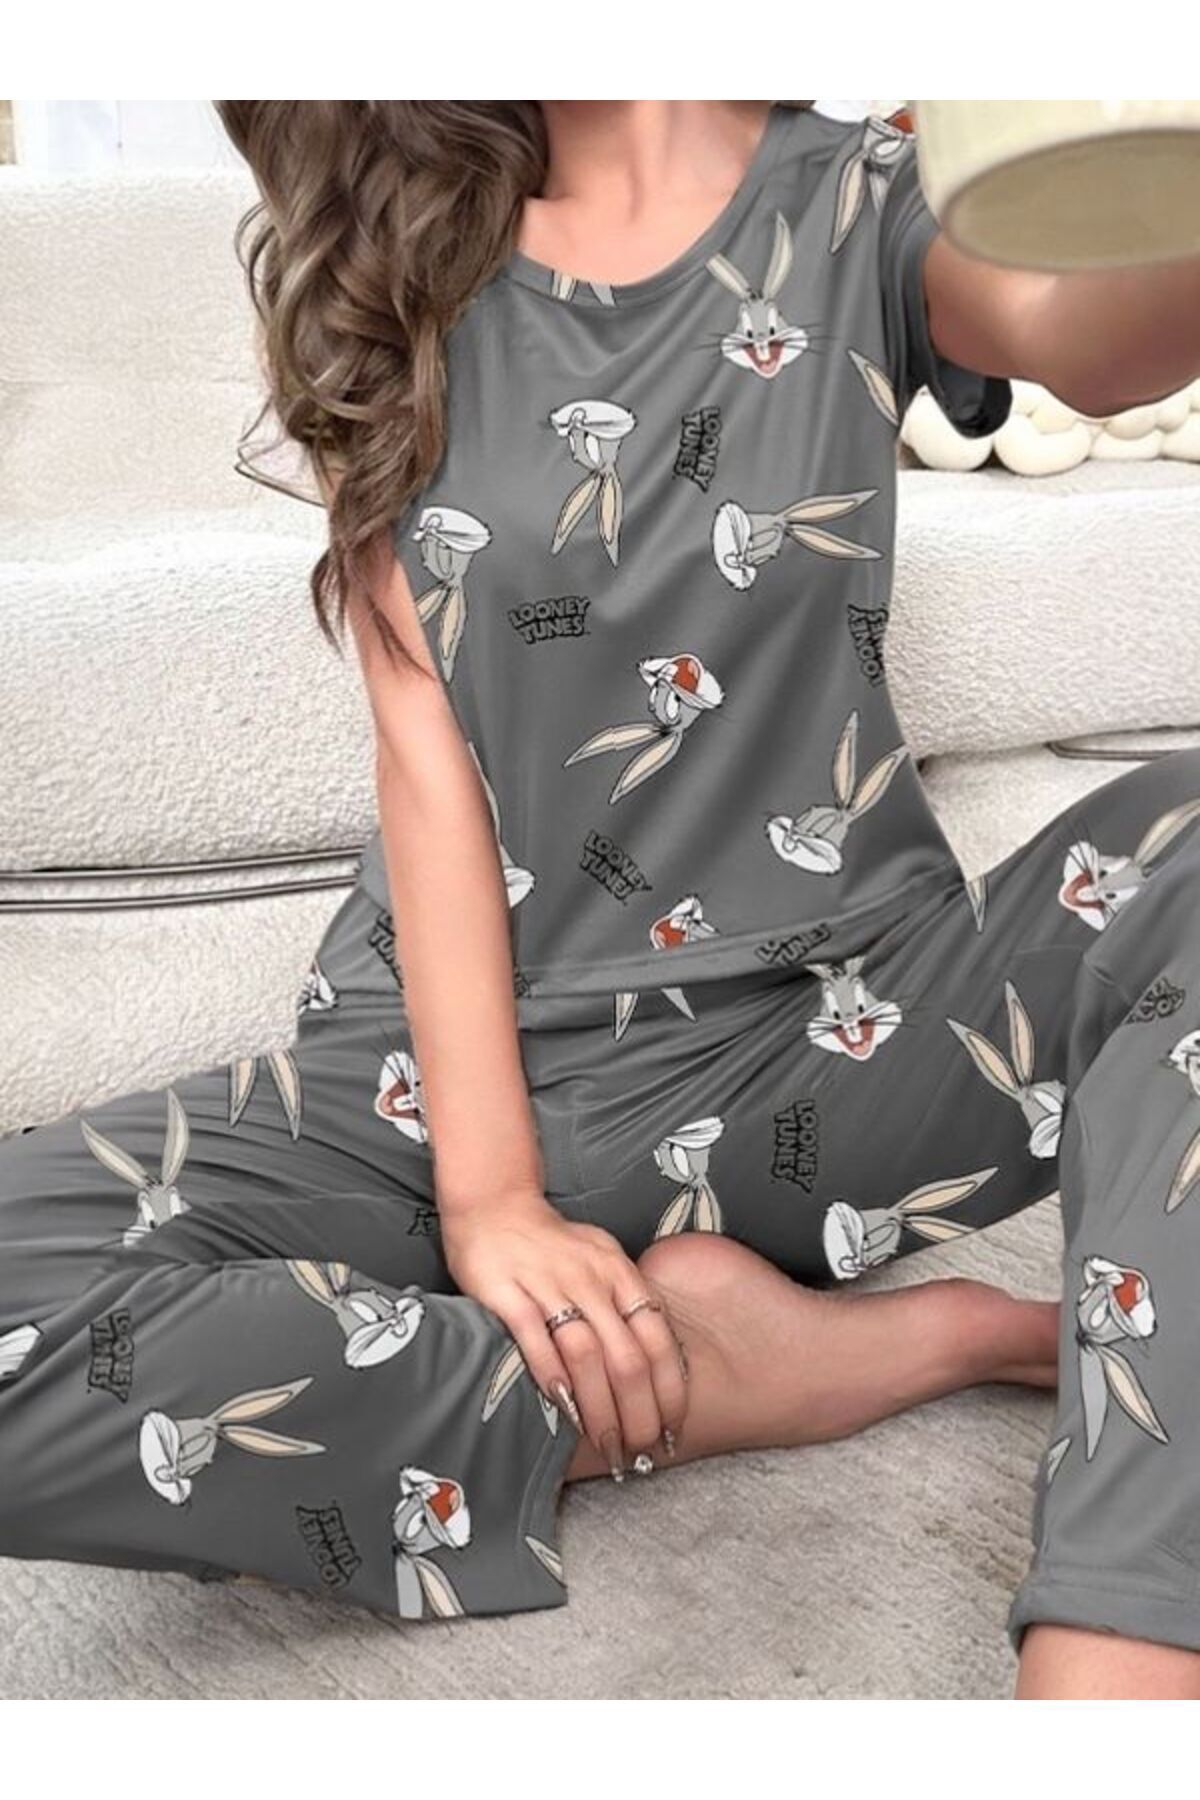 Cesur bugs bunny kadın kısa kol pijama takımı CSR gri renk